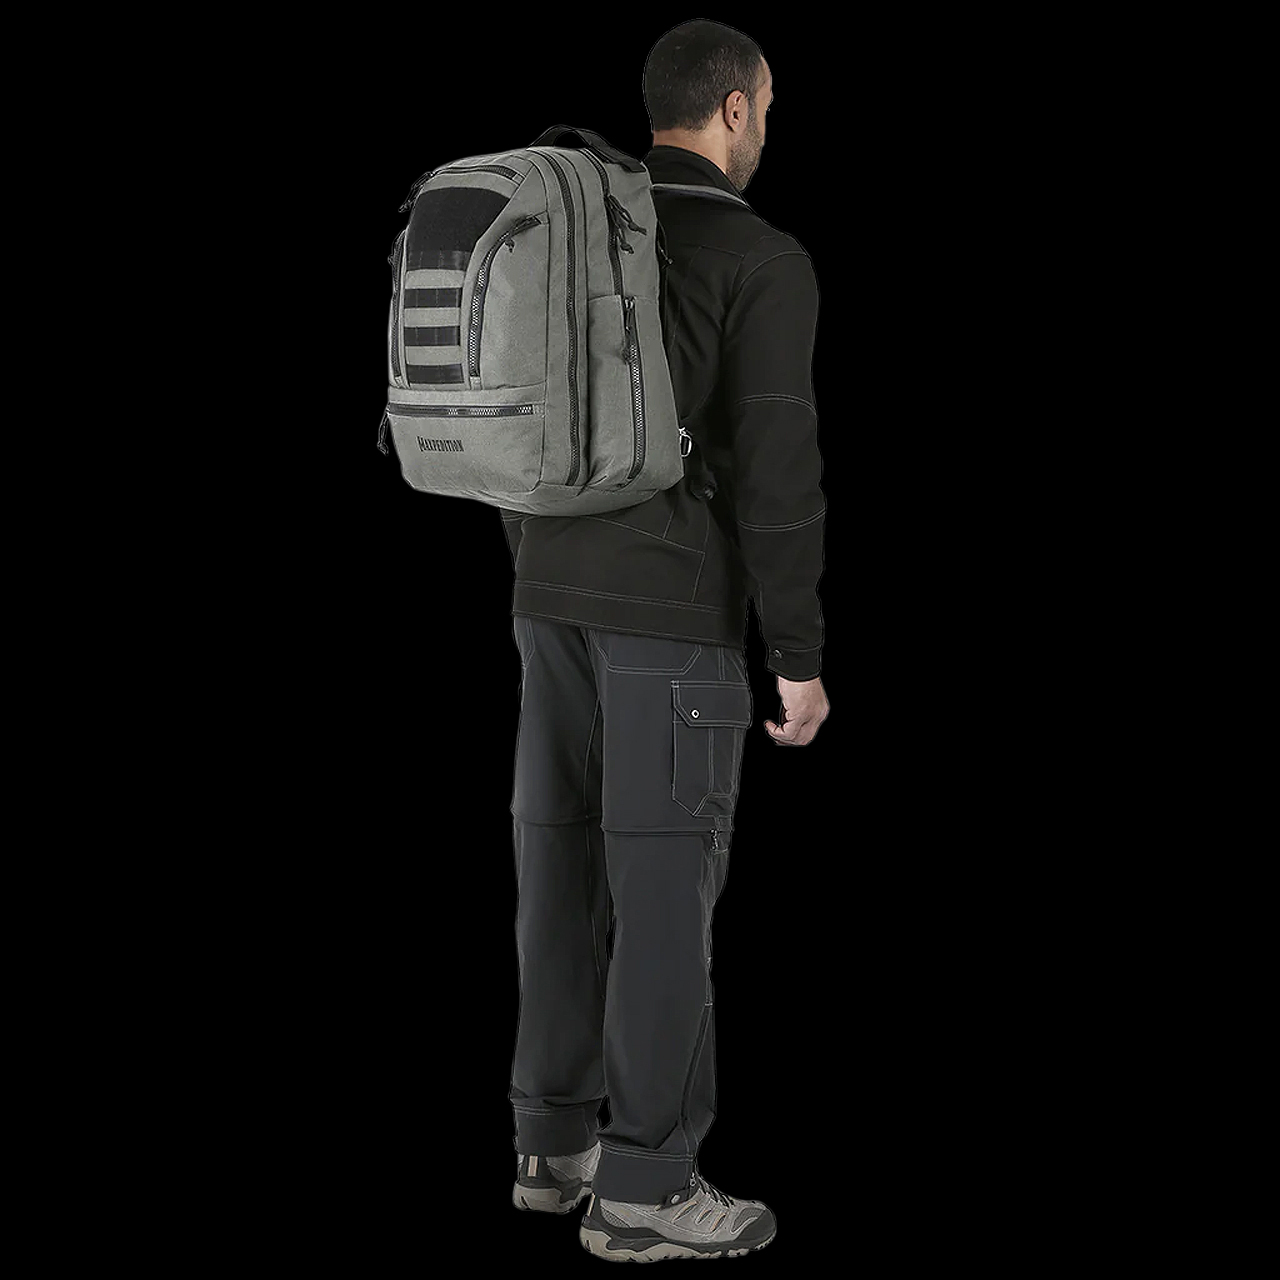 Maxpedition Tehama Backpack 37L Volume Green Semi-Rigid 1000D